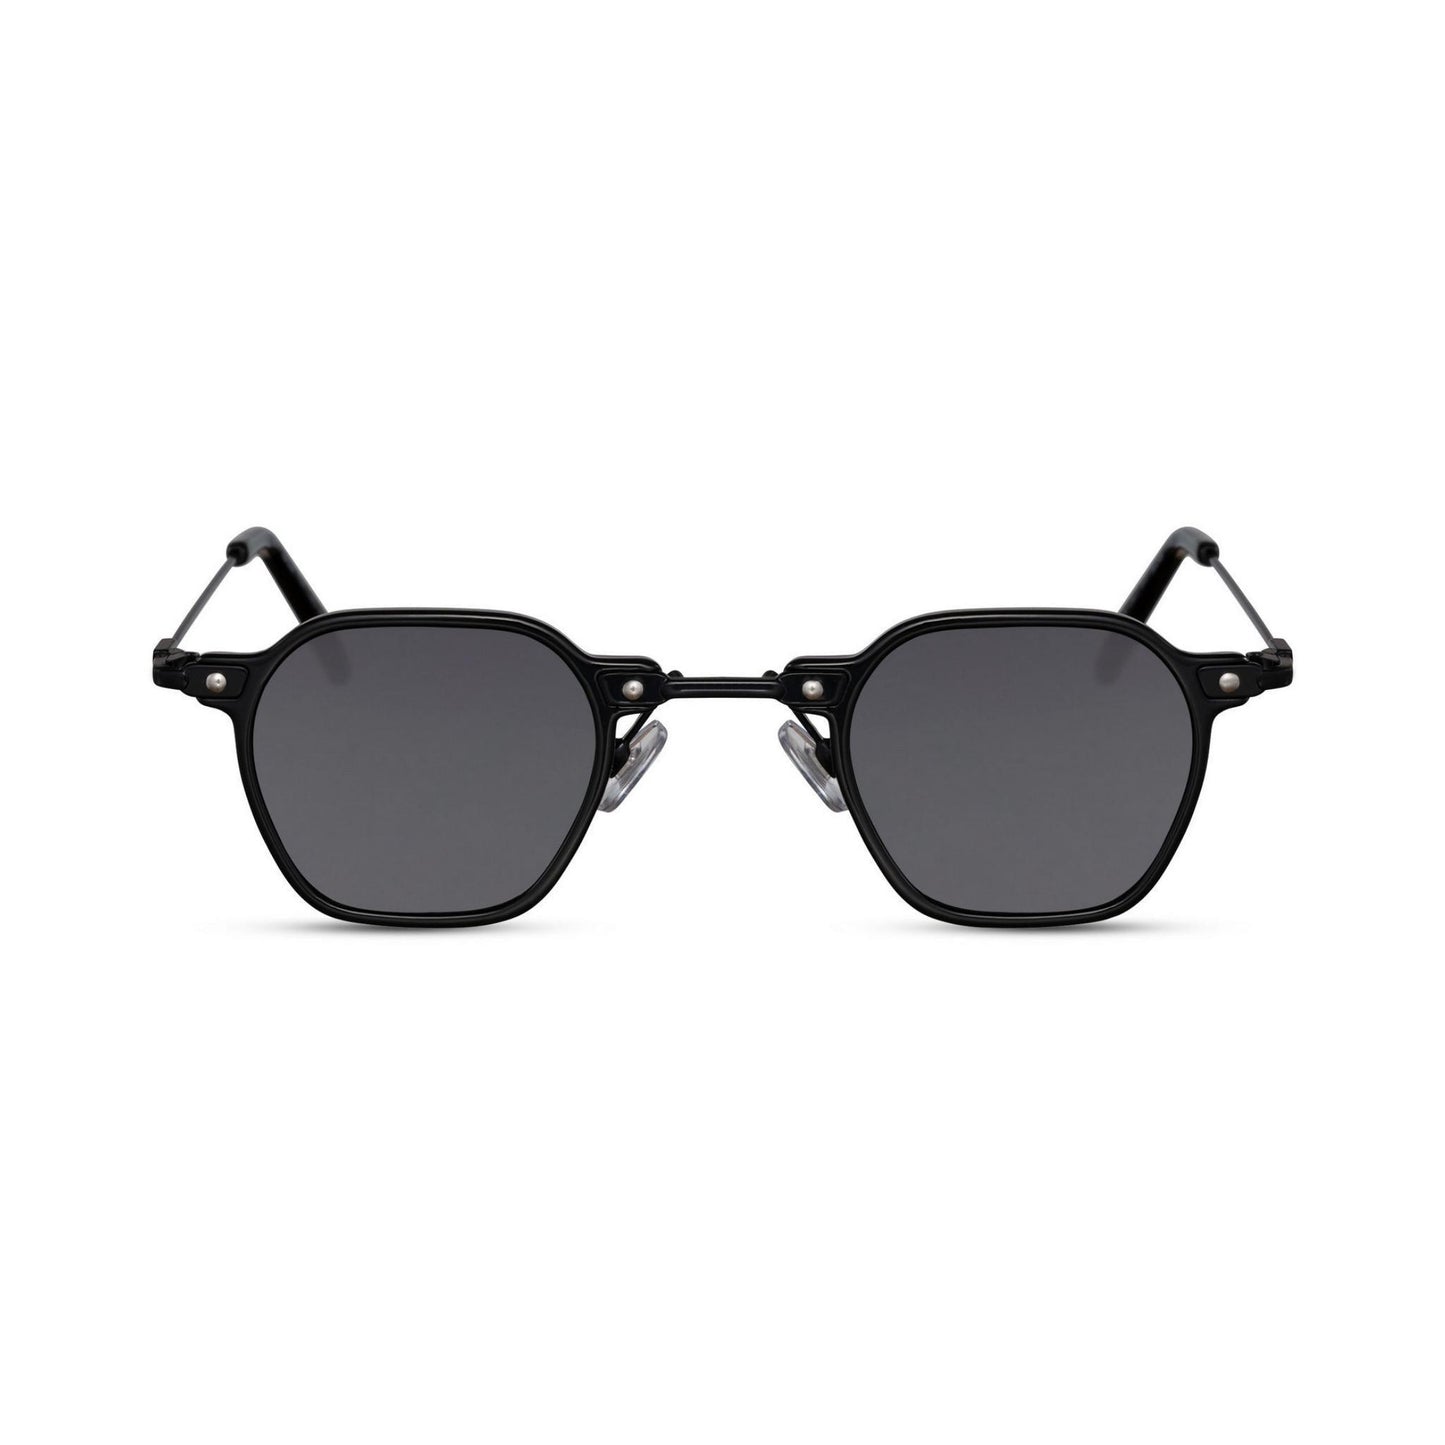 Γυαλιά ηλίου (retro) Mirage της Exposure Sunglasses με προστασία UV400 με μαύρο σκελετό και μαύρο φακό.